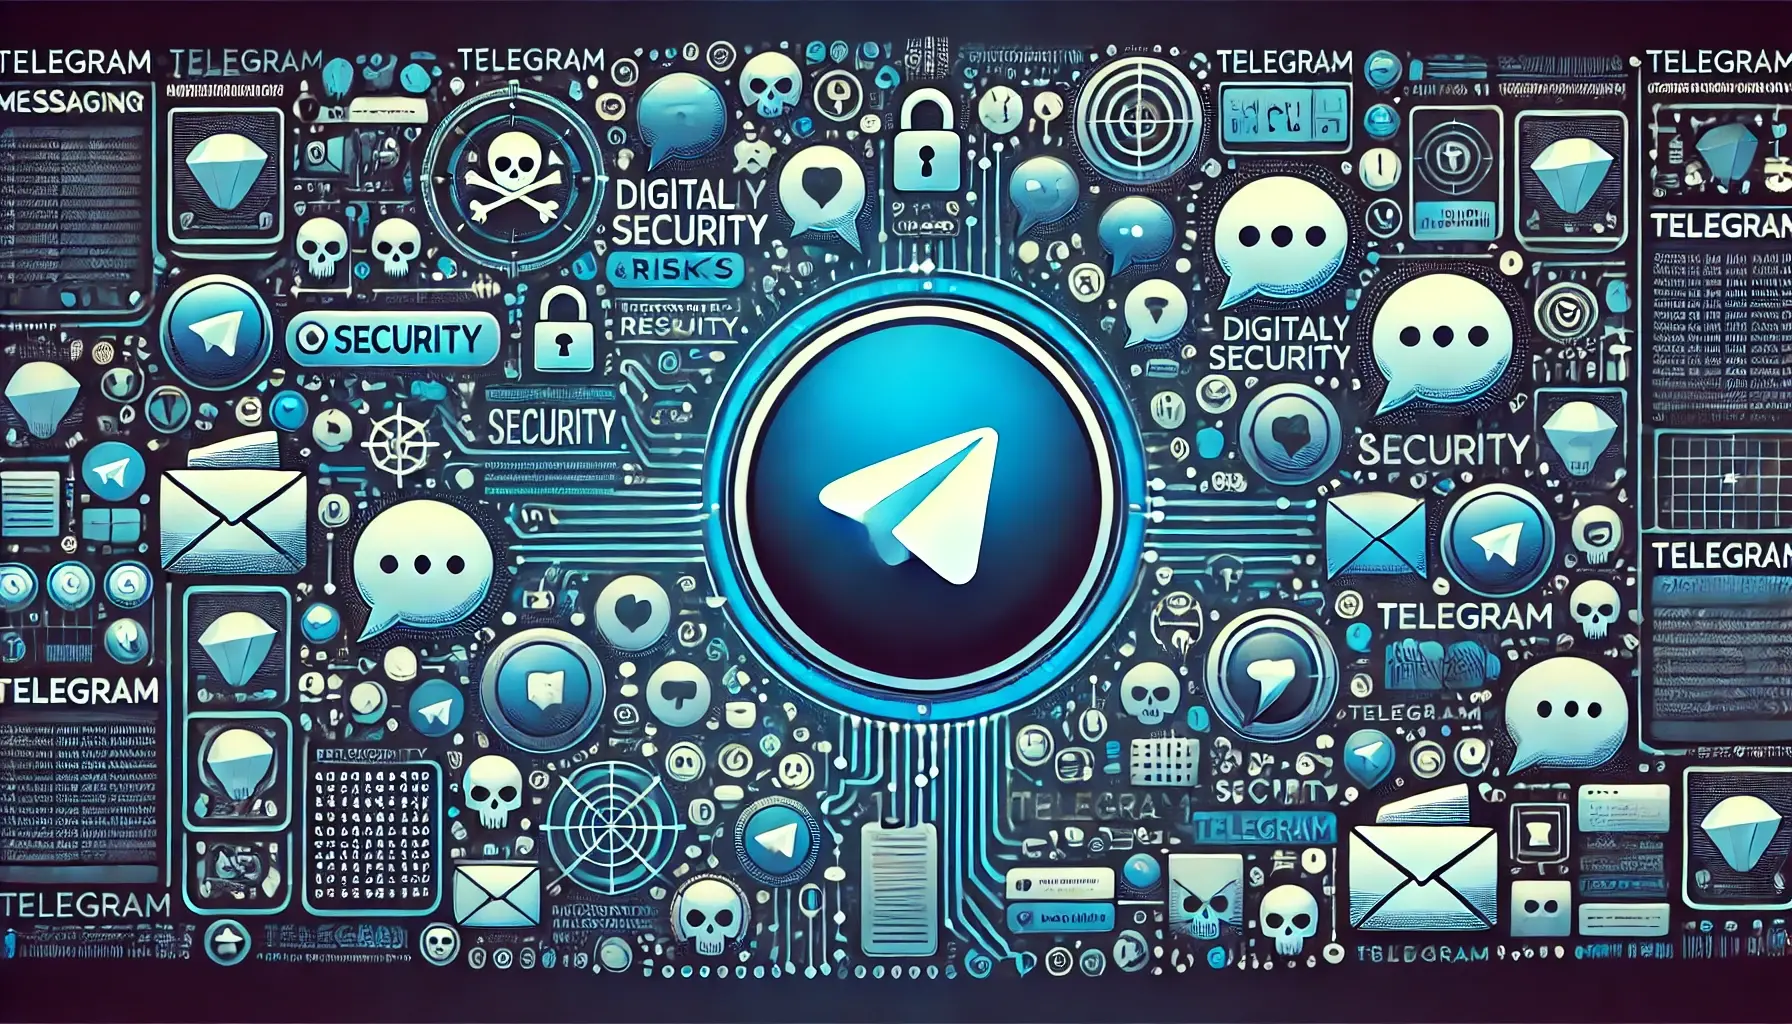 ¡Alerta! 361 Millones de Credenciales Filtradas en Telegram